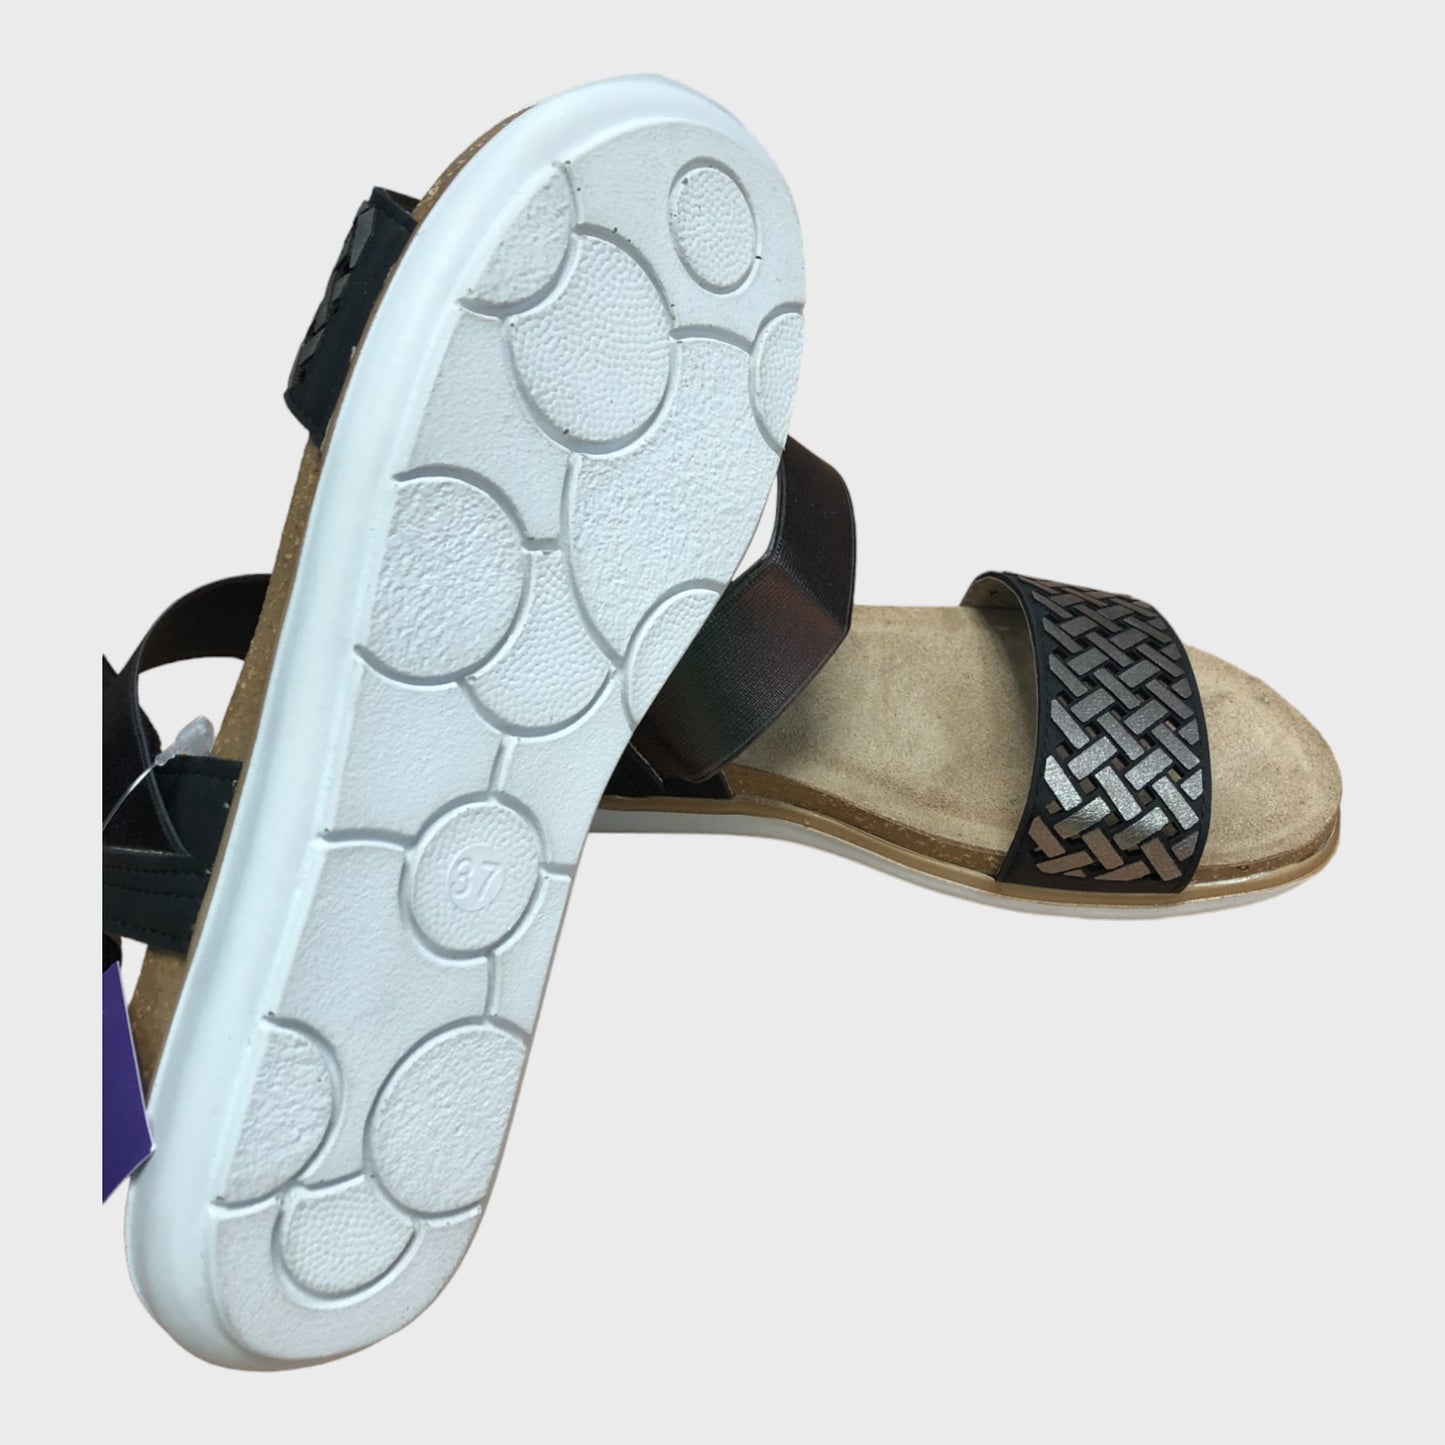 Women's Lotus Sandals - Metallic Cross Design